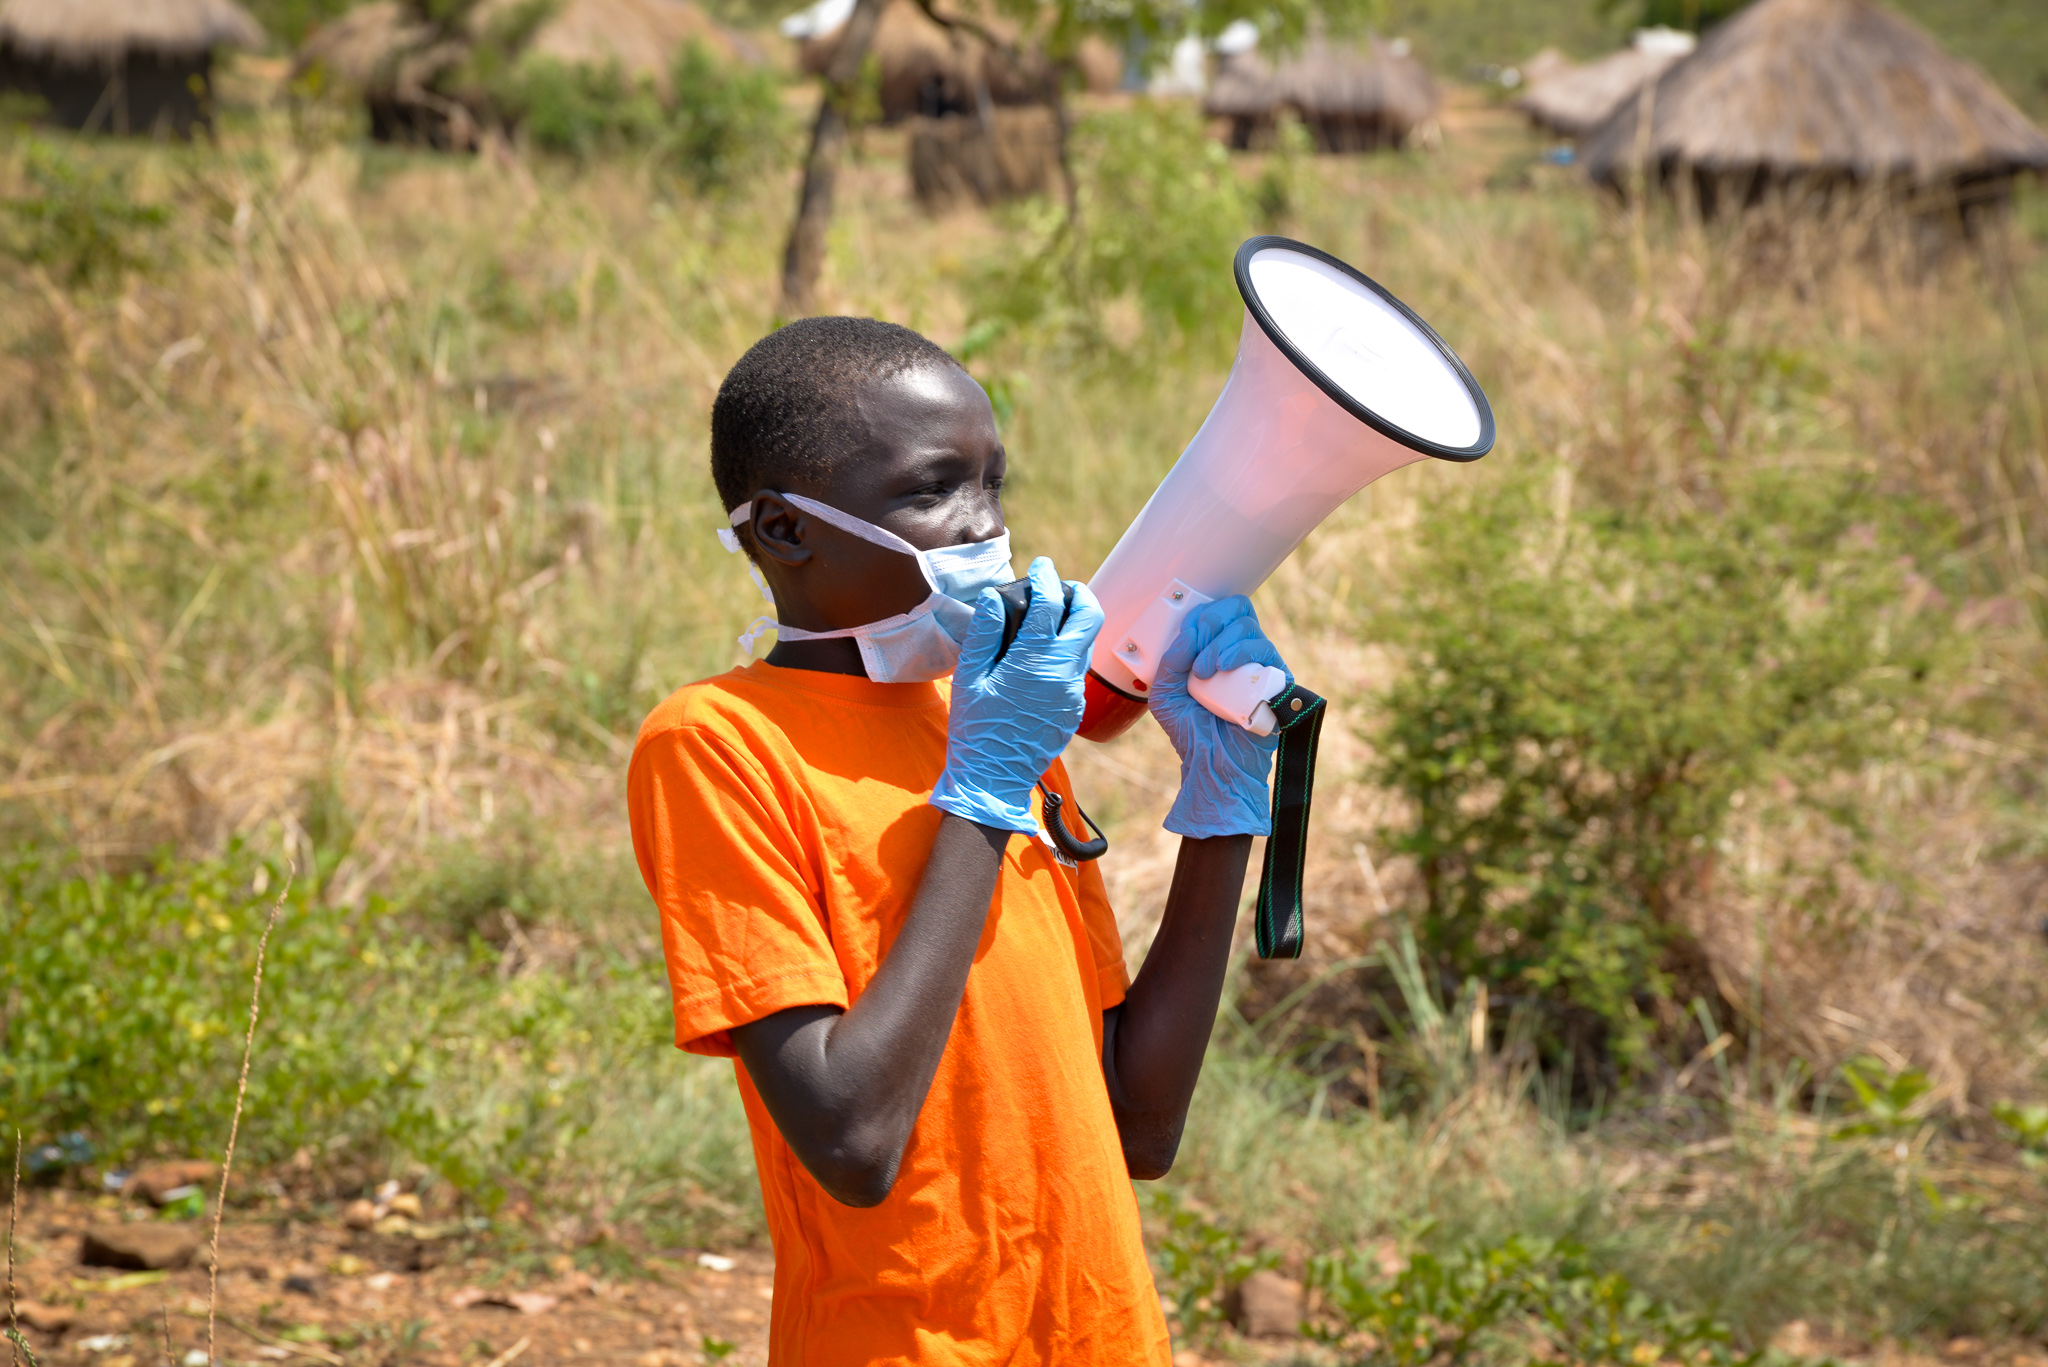 William hilft mit Flüchtlinge in Uganda über das richtige Verhalten in Corona-Zeiten zu informieren.